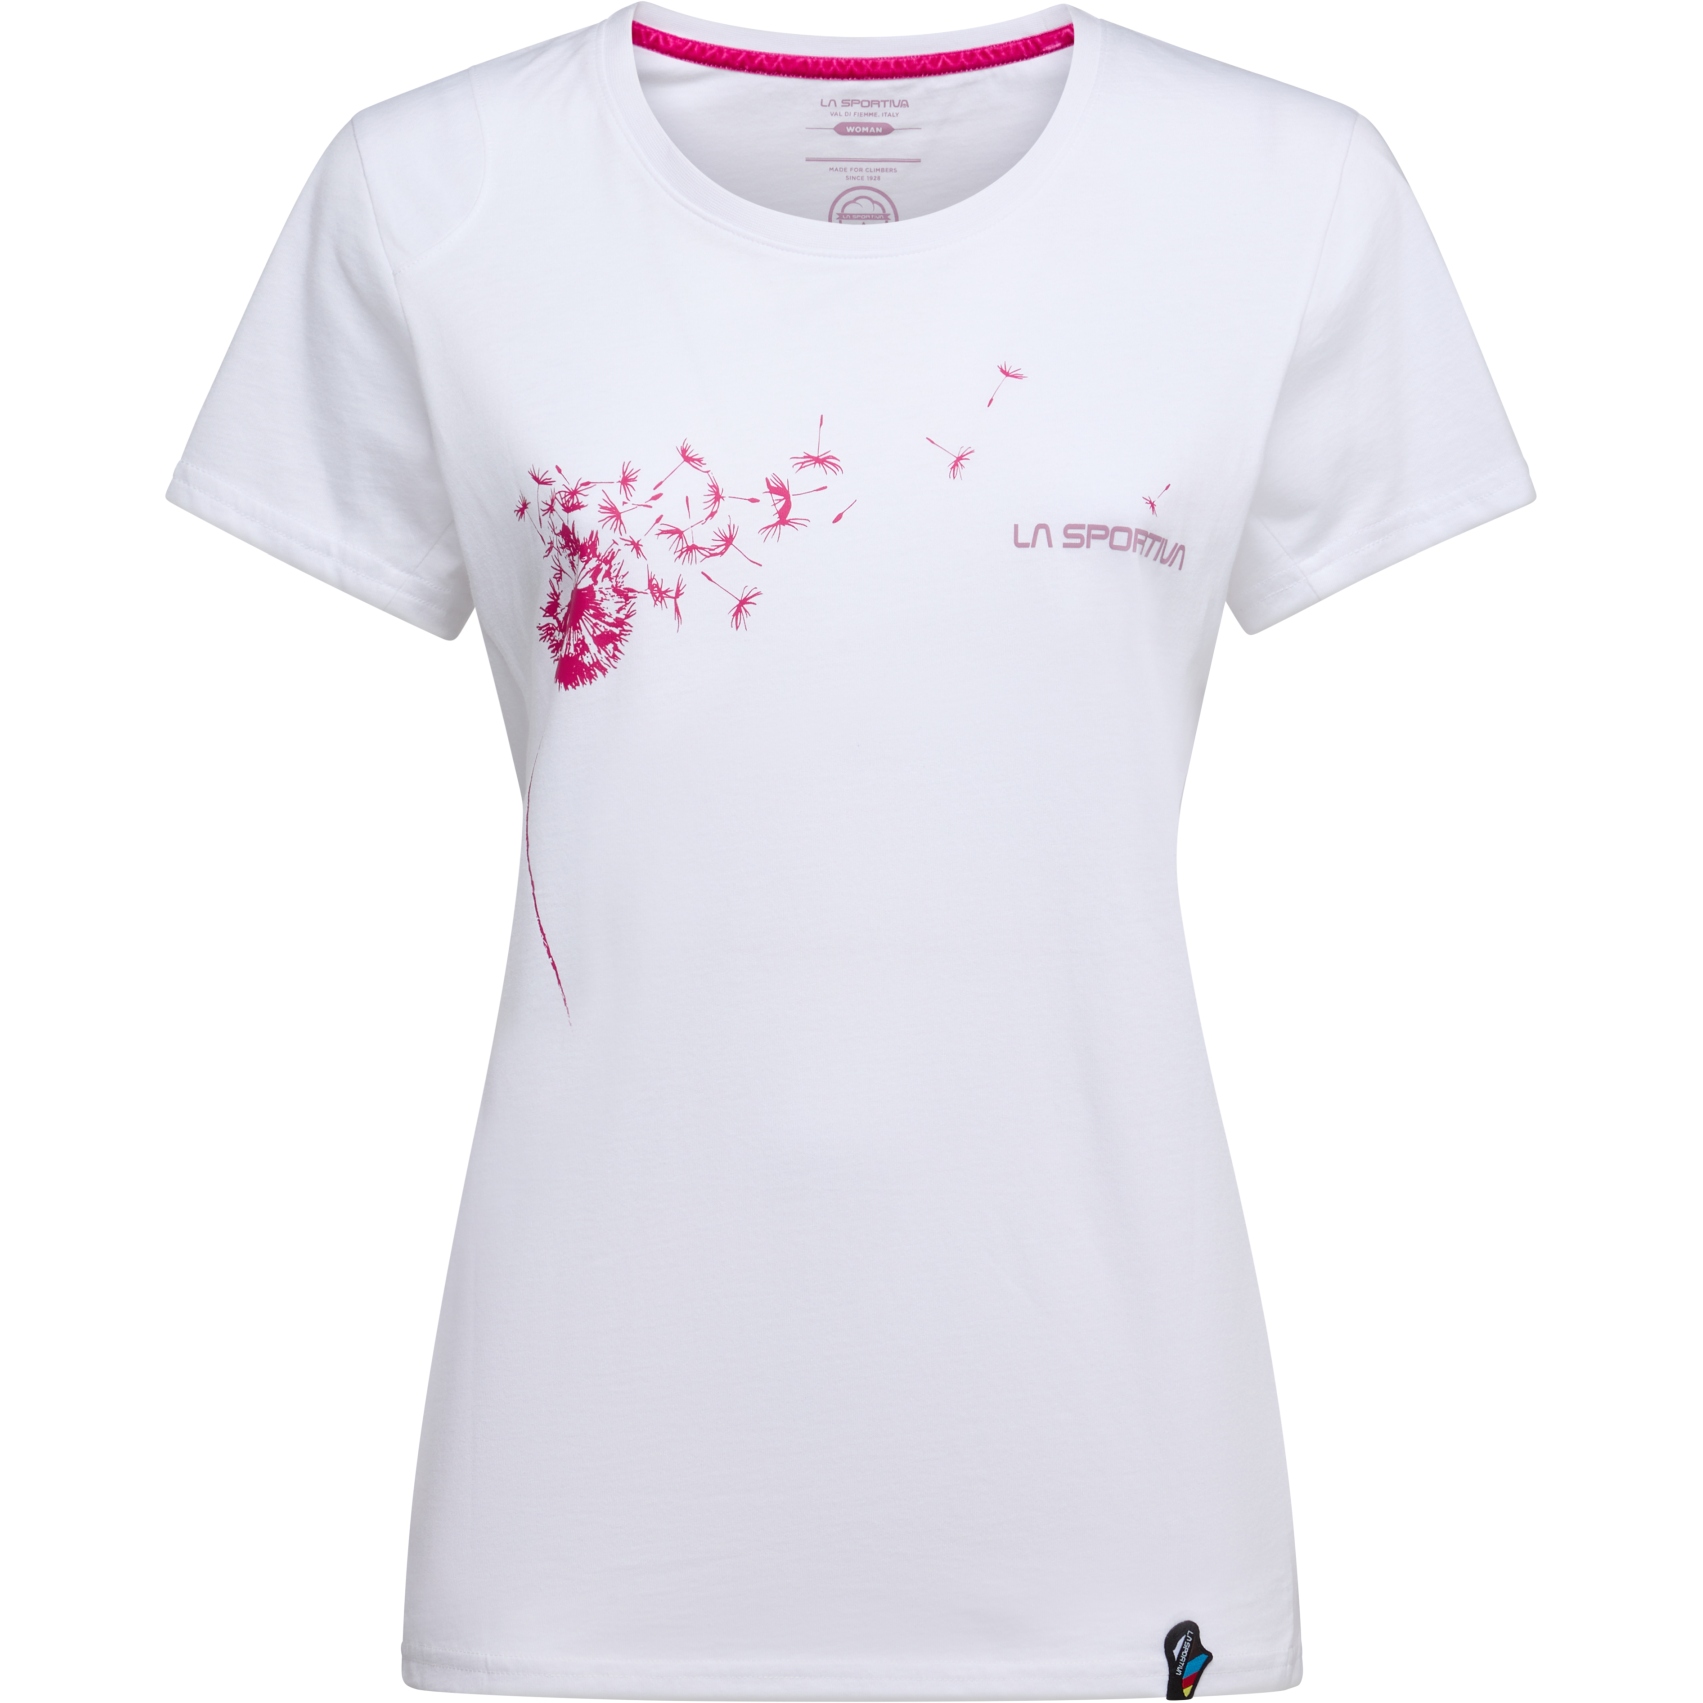 Produktbild von La Sportiva Windy T-Shirt Damen - White/Rose